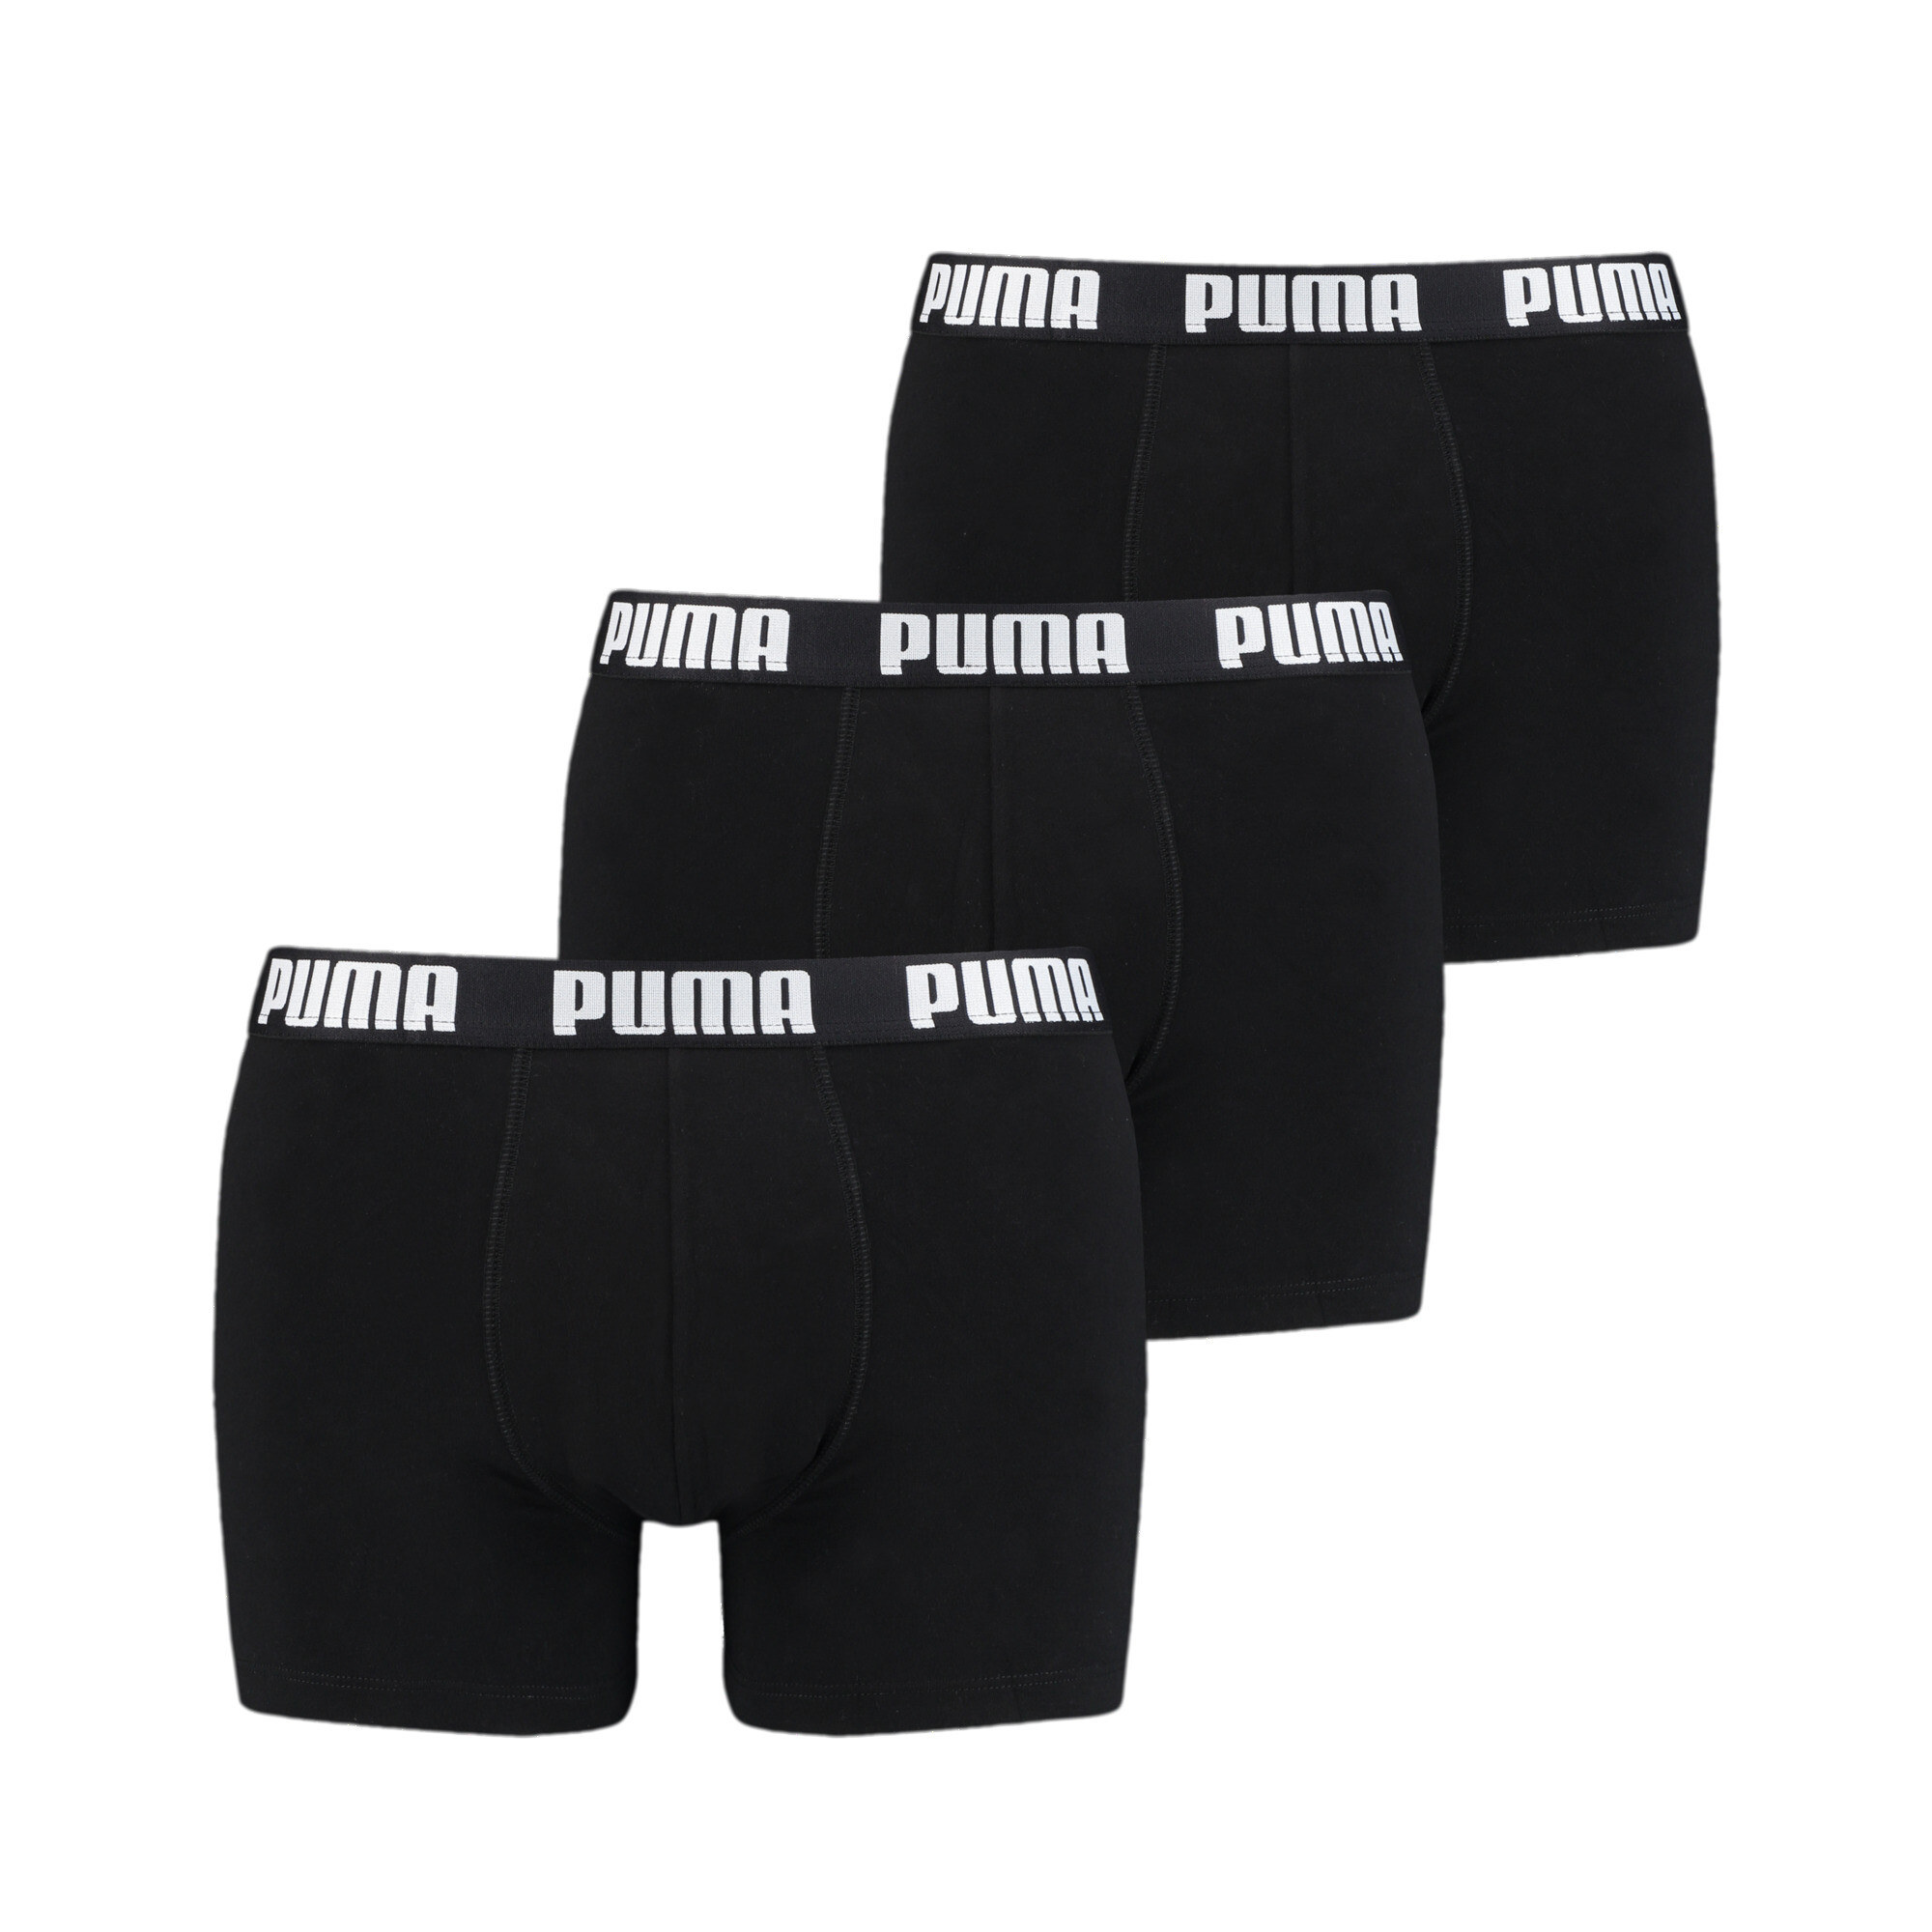 Men's PUMA Everyday Boxers 3 Pack In Black, Size Medium